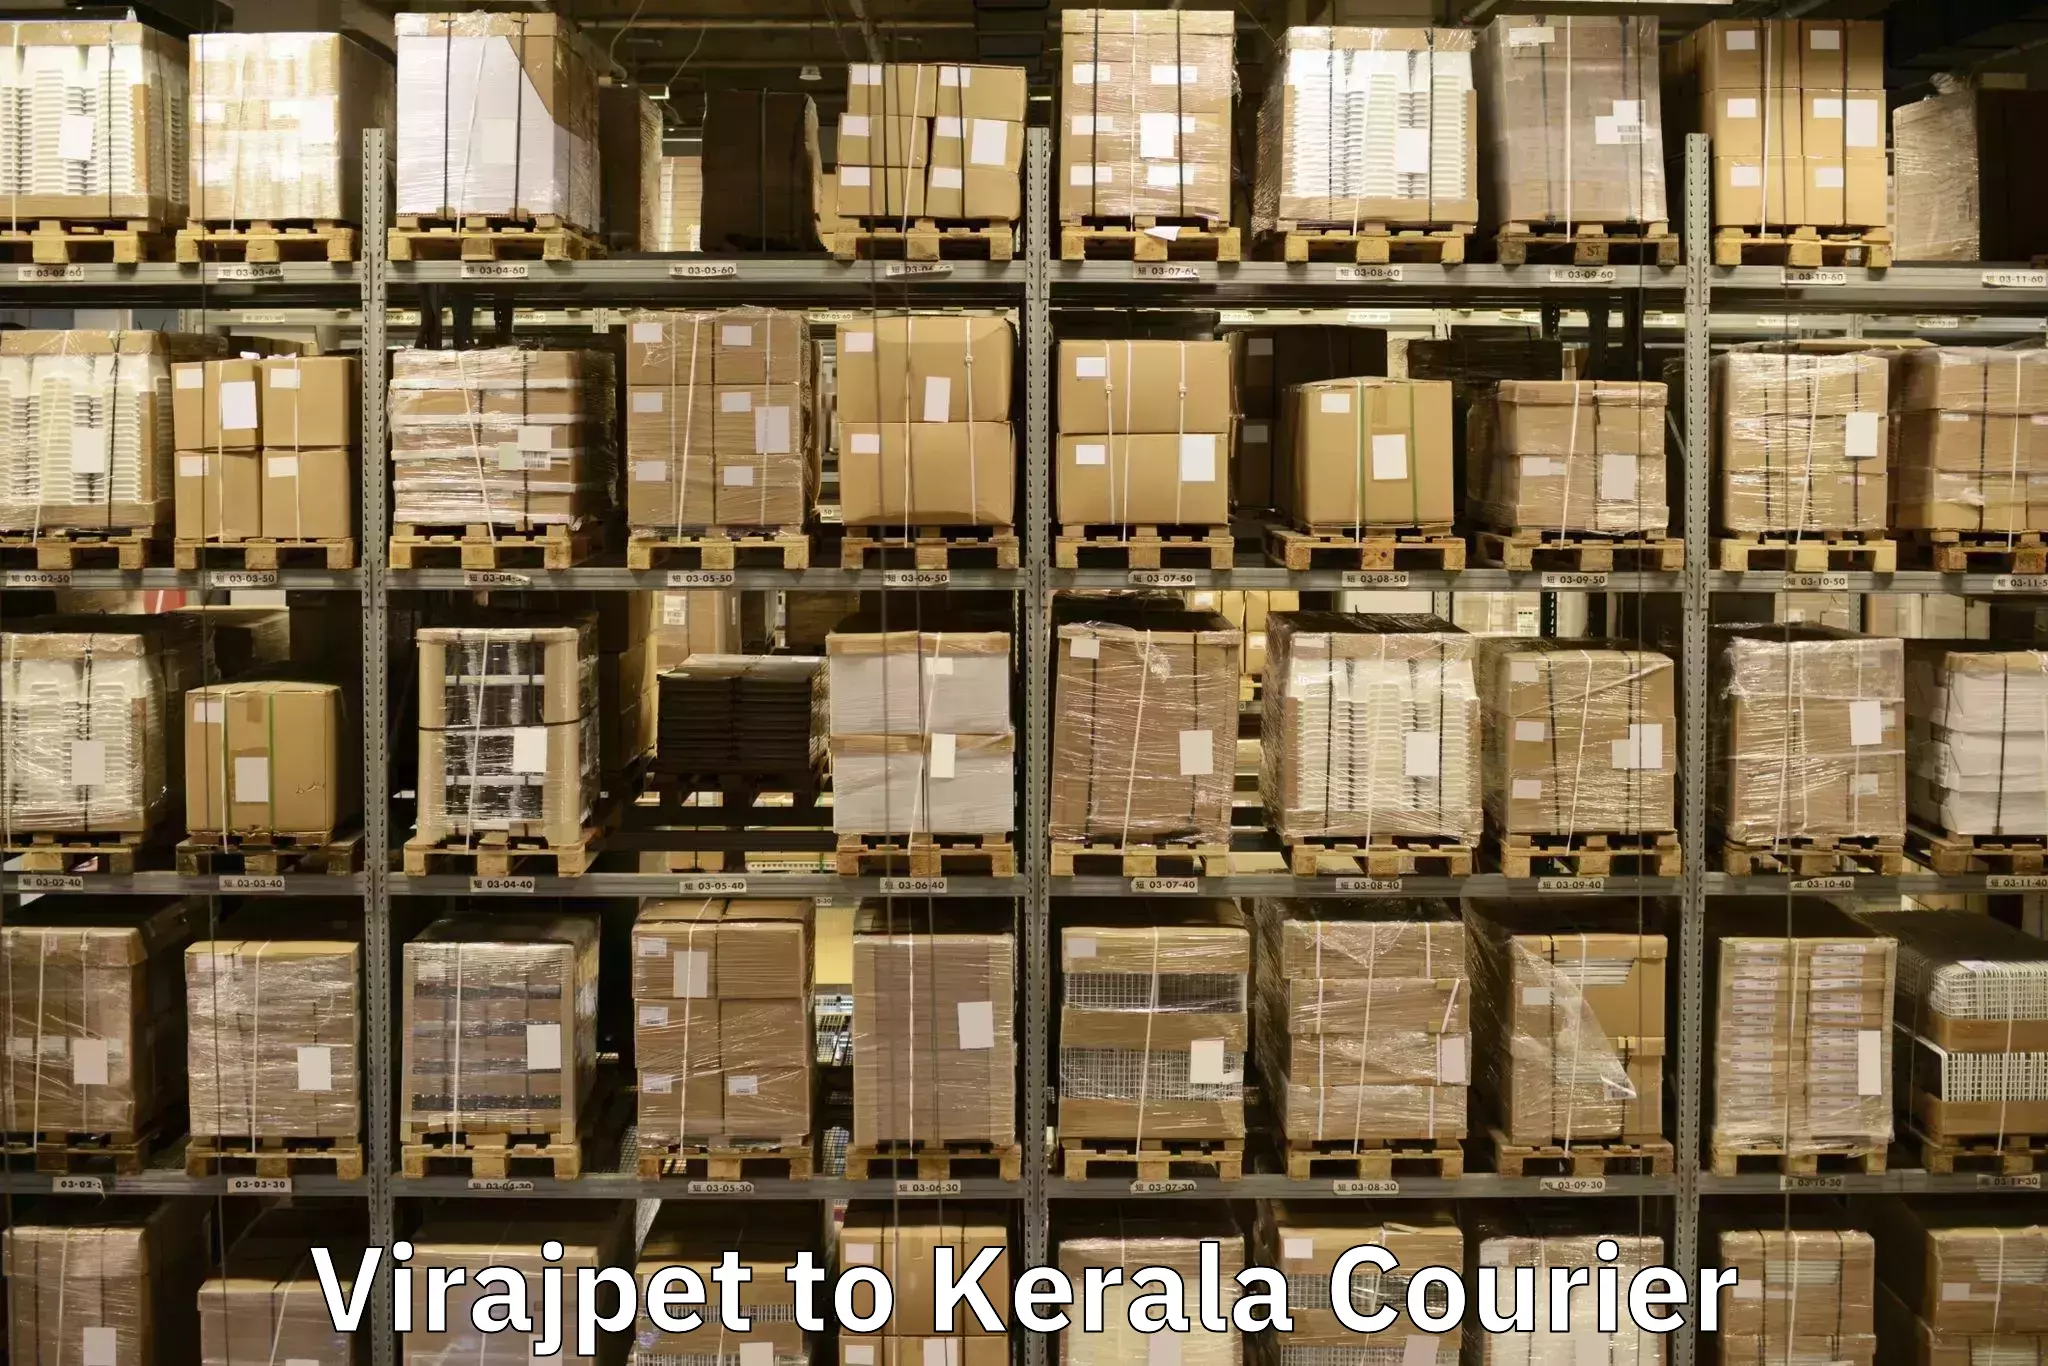 Professional movers and packers Virajpet to Sreekandapuram